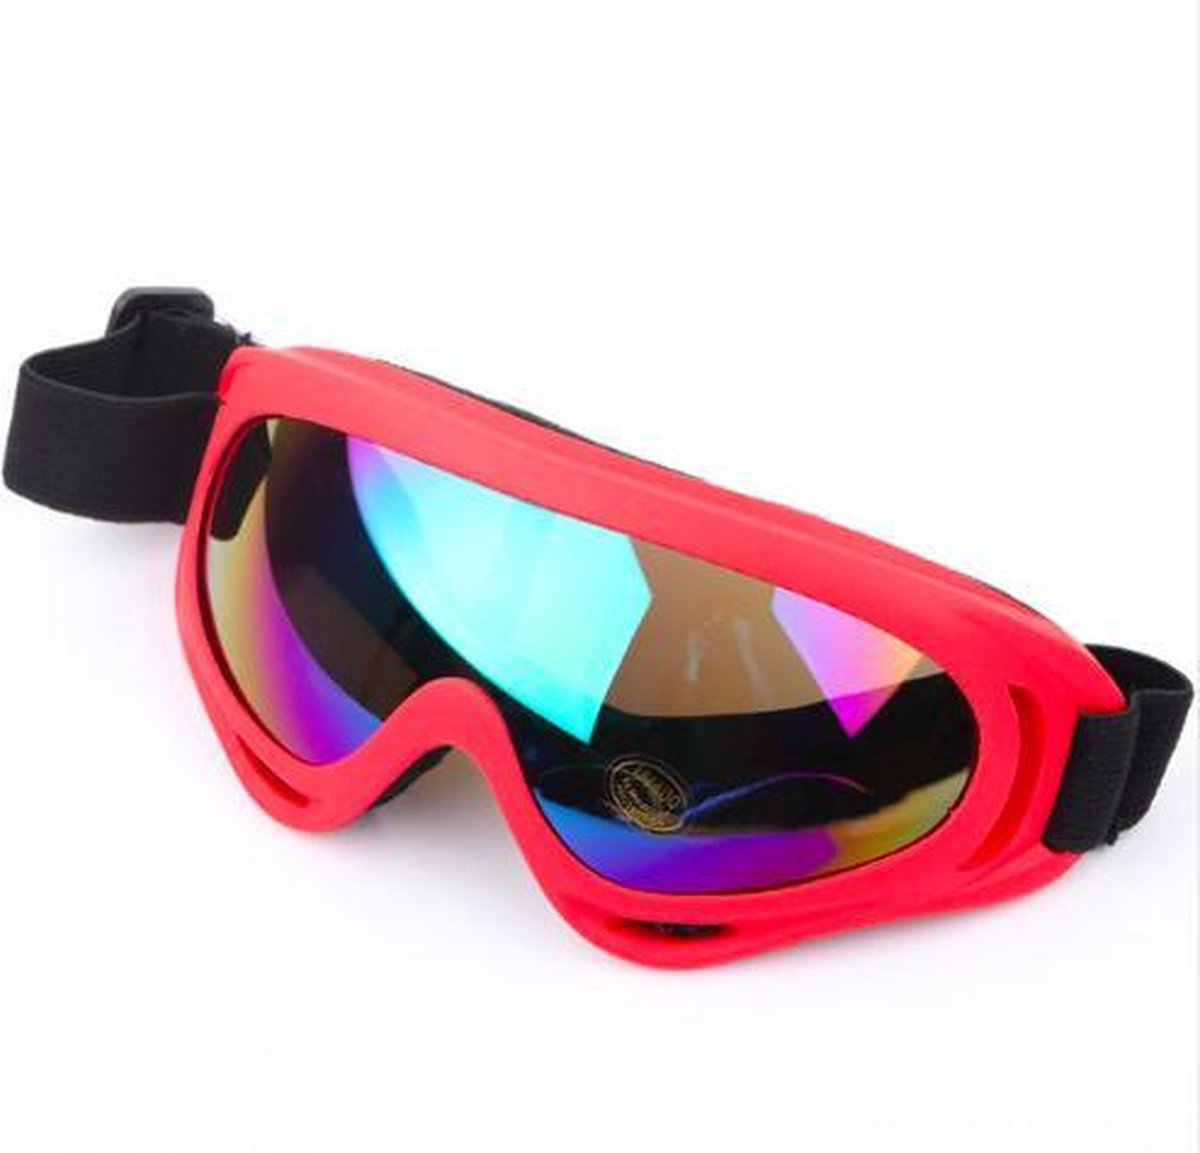 Kinderrijmpjes Opheldering pakket Ski/Snowboard Bril Wintersport - Snowboardbril/Skibril - Rood - Multi  gekleurd glas | bol.com